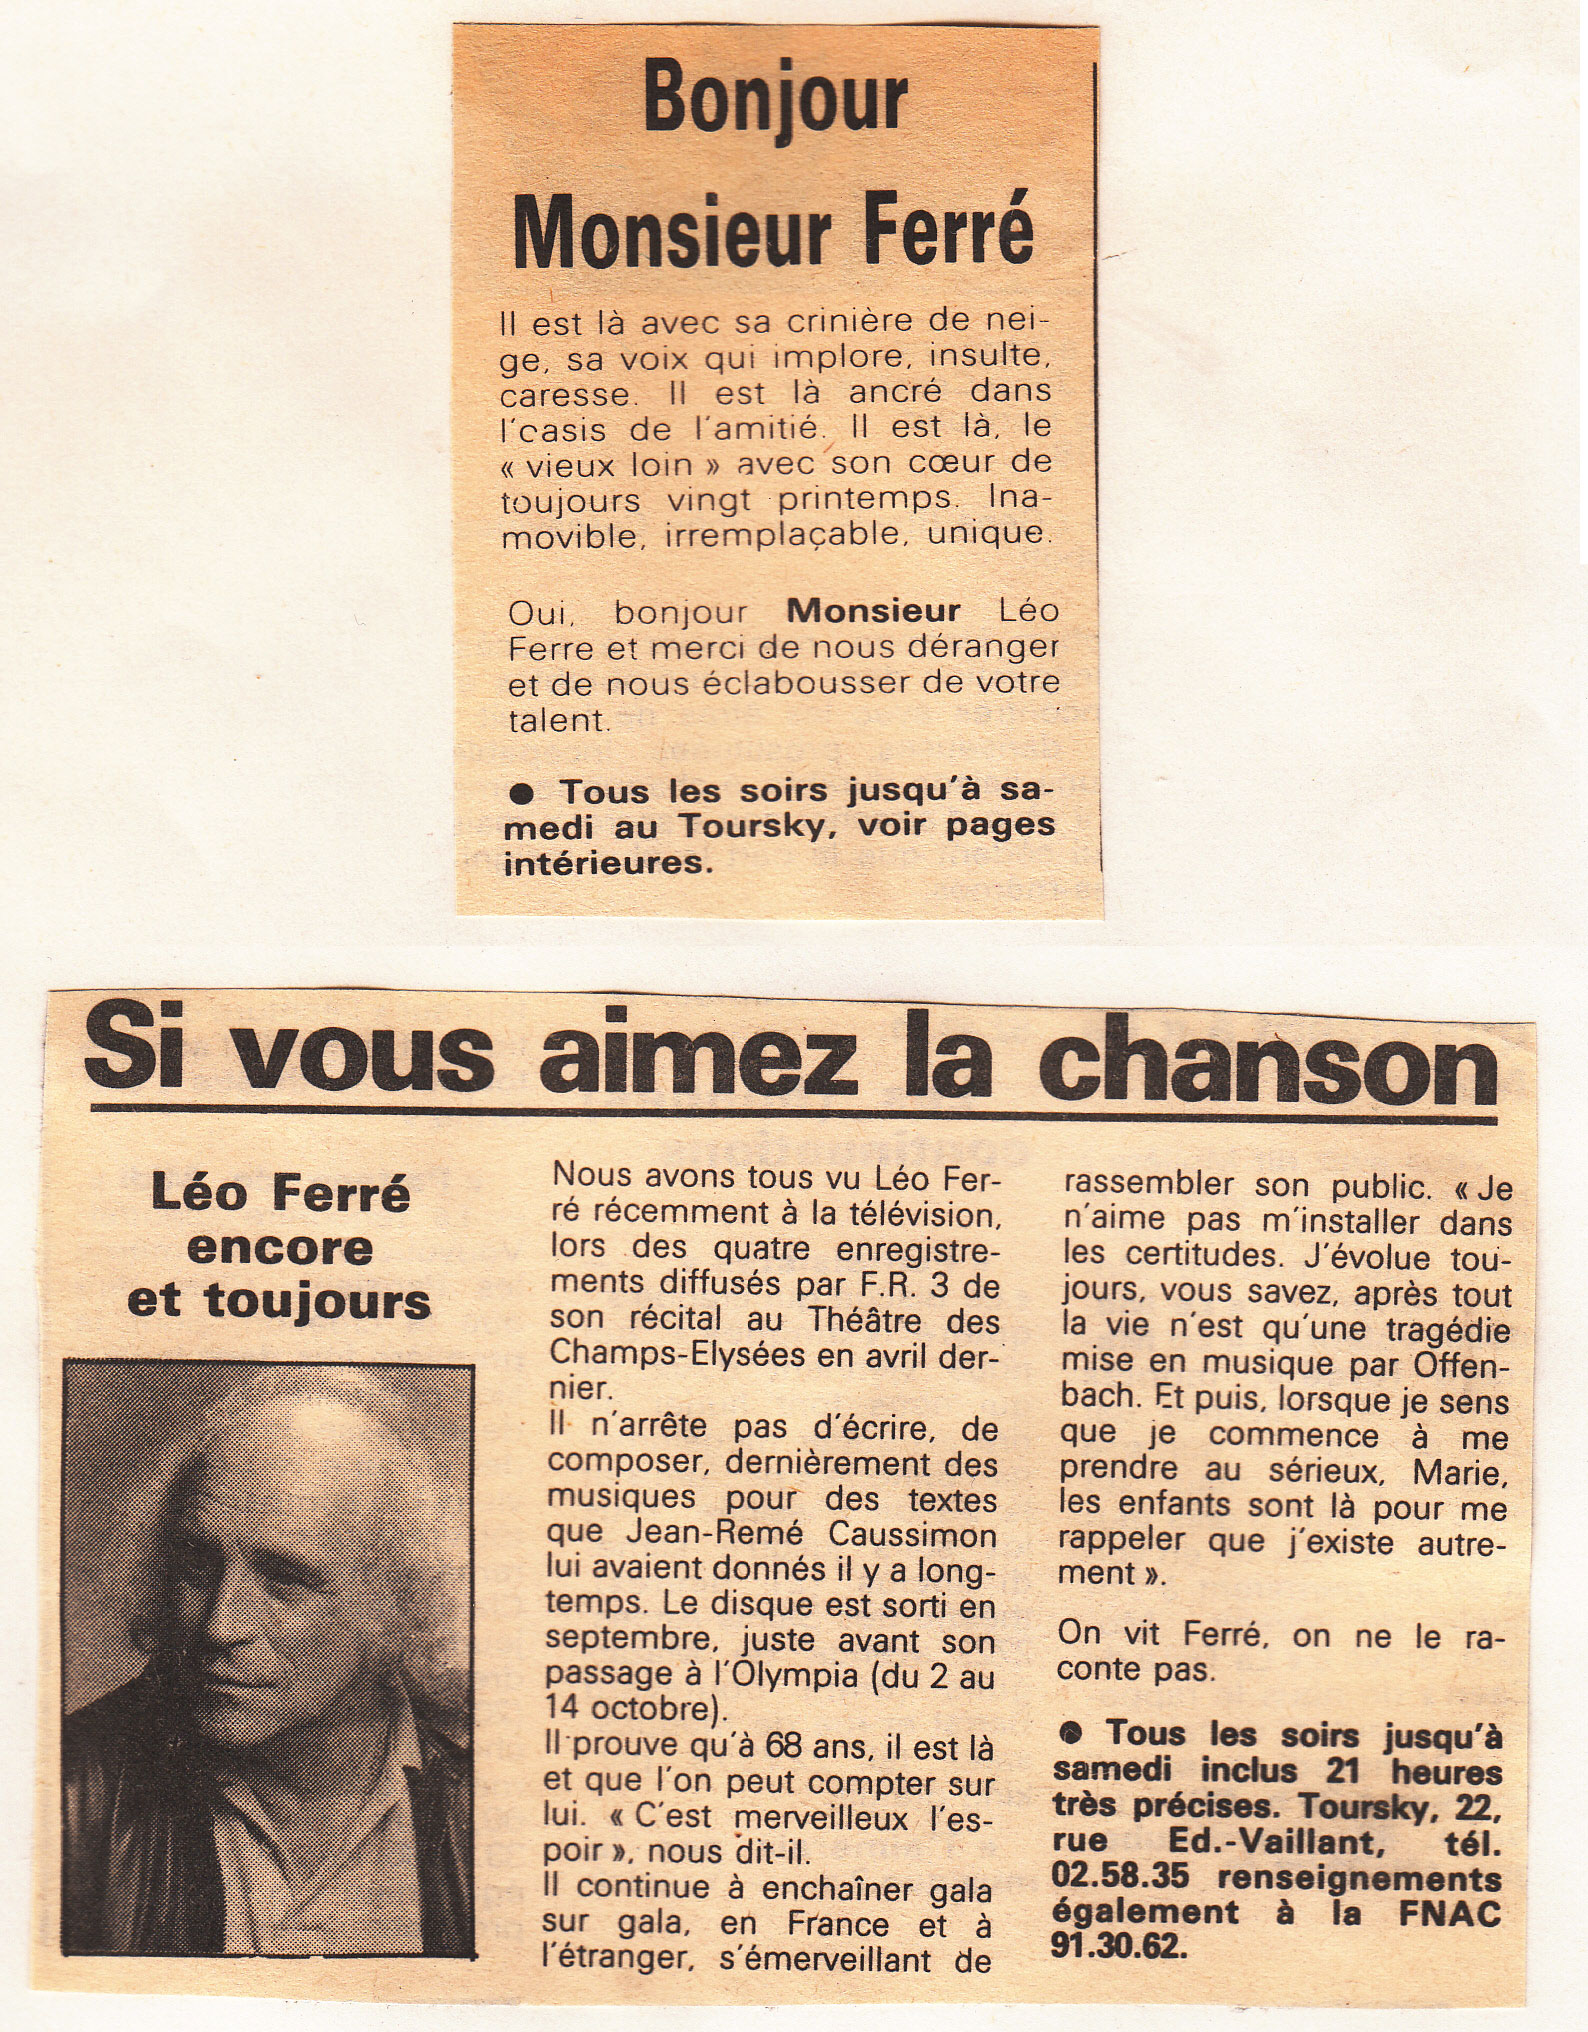 Léo Ferré - Supplément Spectacles du quotidien marseillais, février 1985